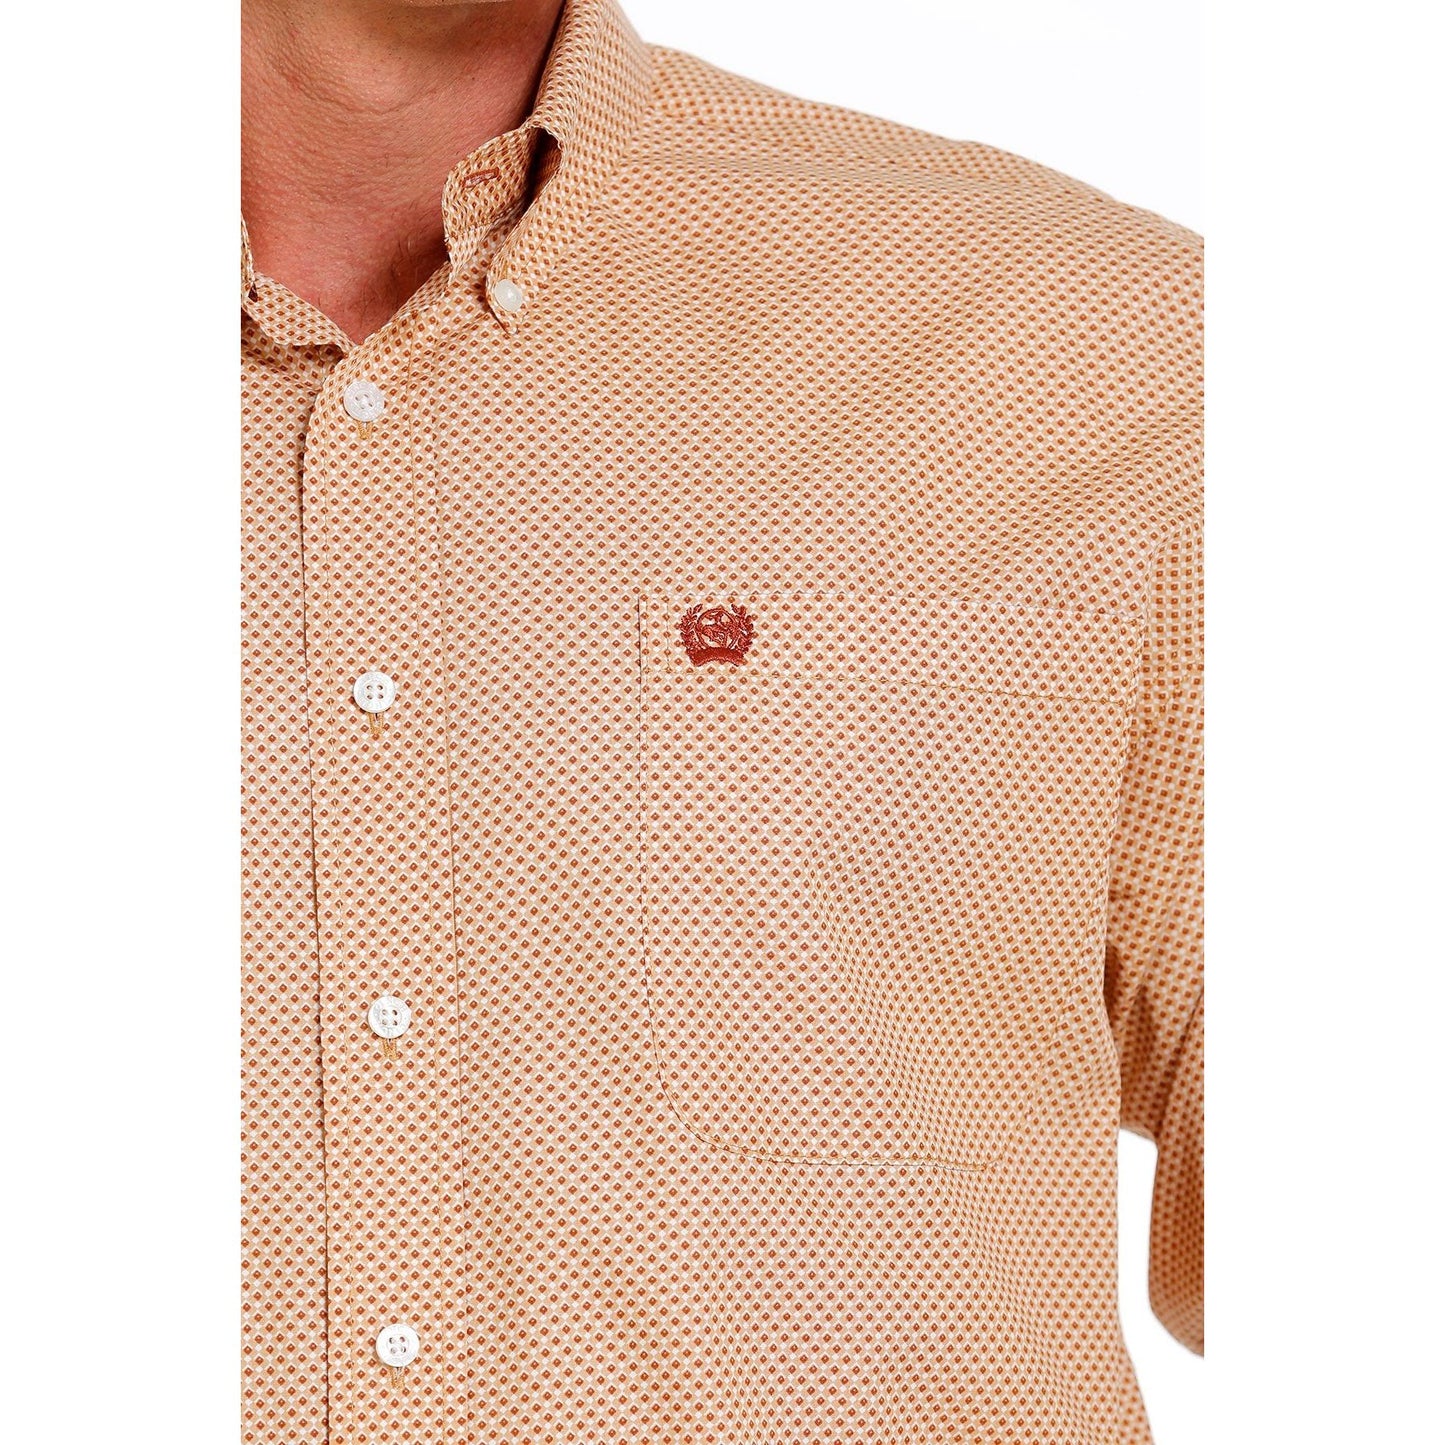 Cinch Men's Geometric Print Button Down Western Shirt Khaki/White